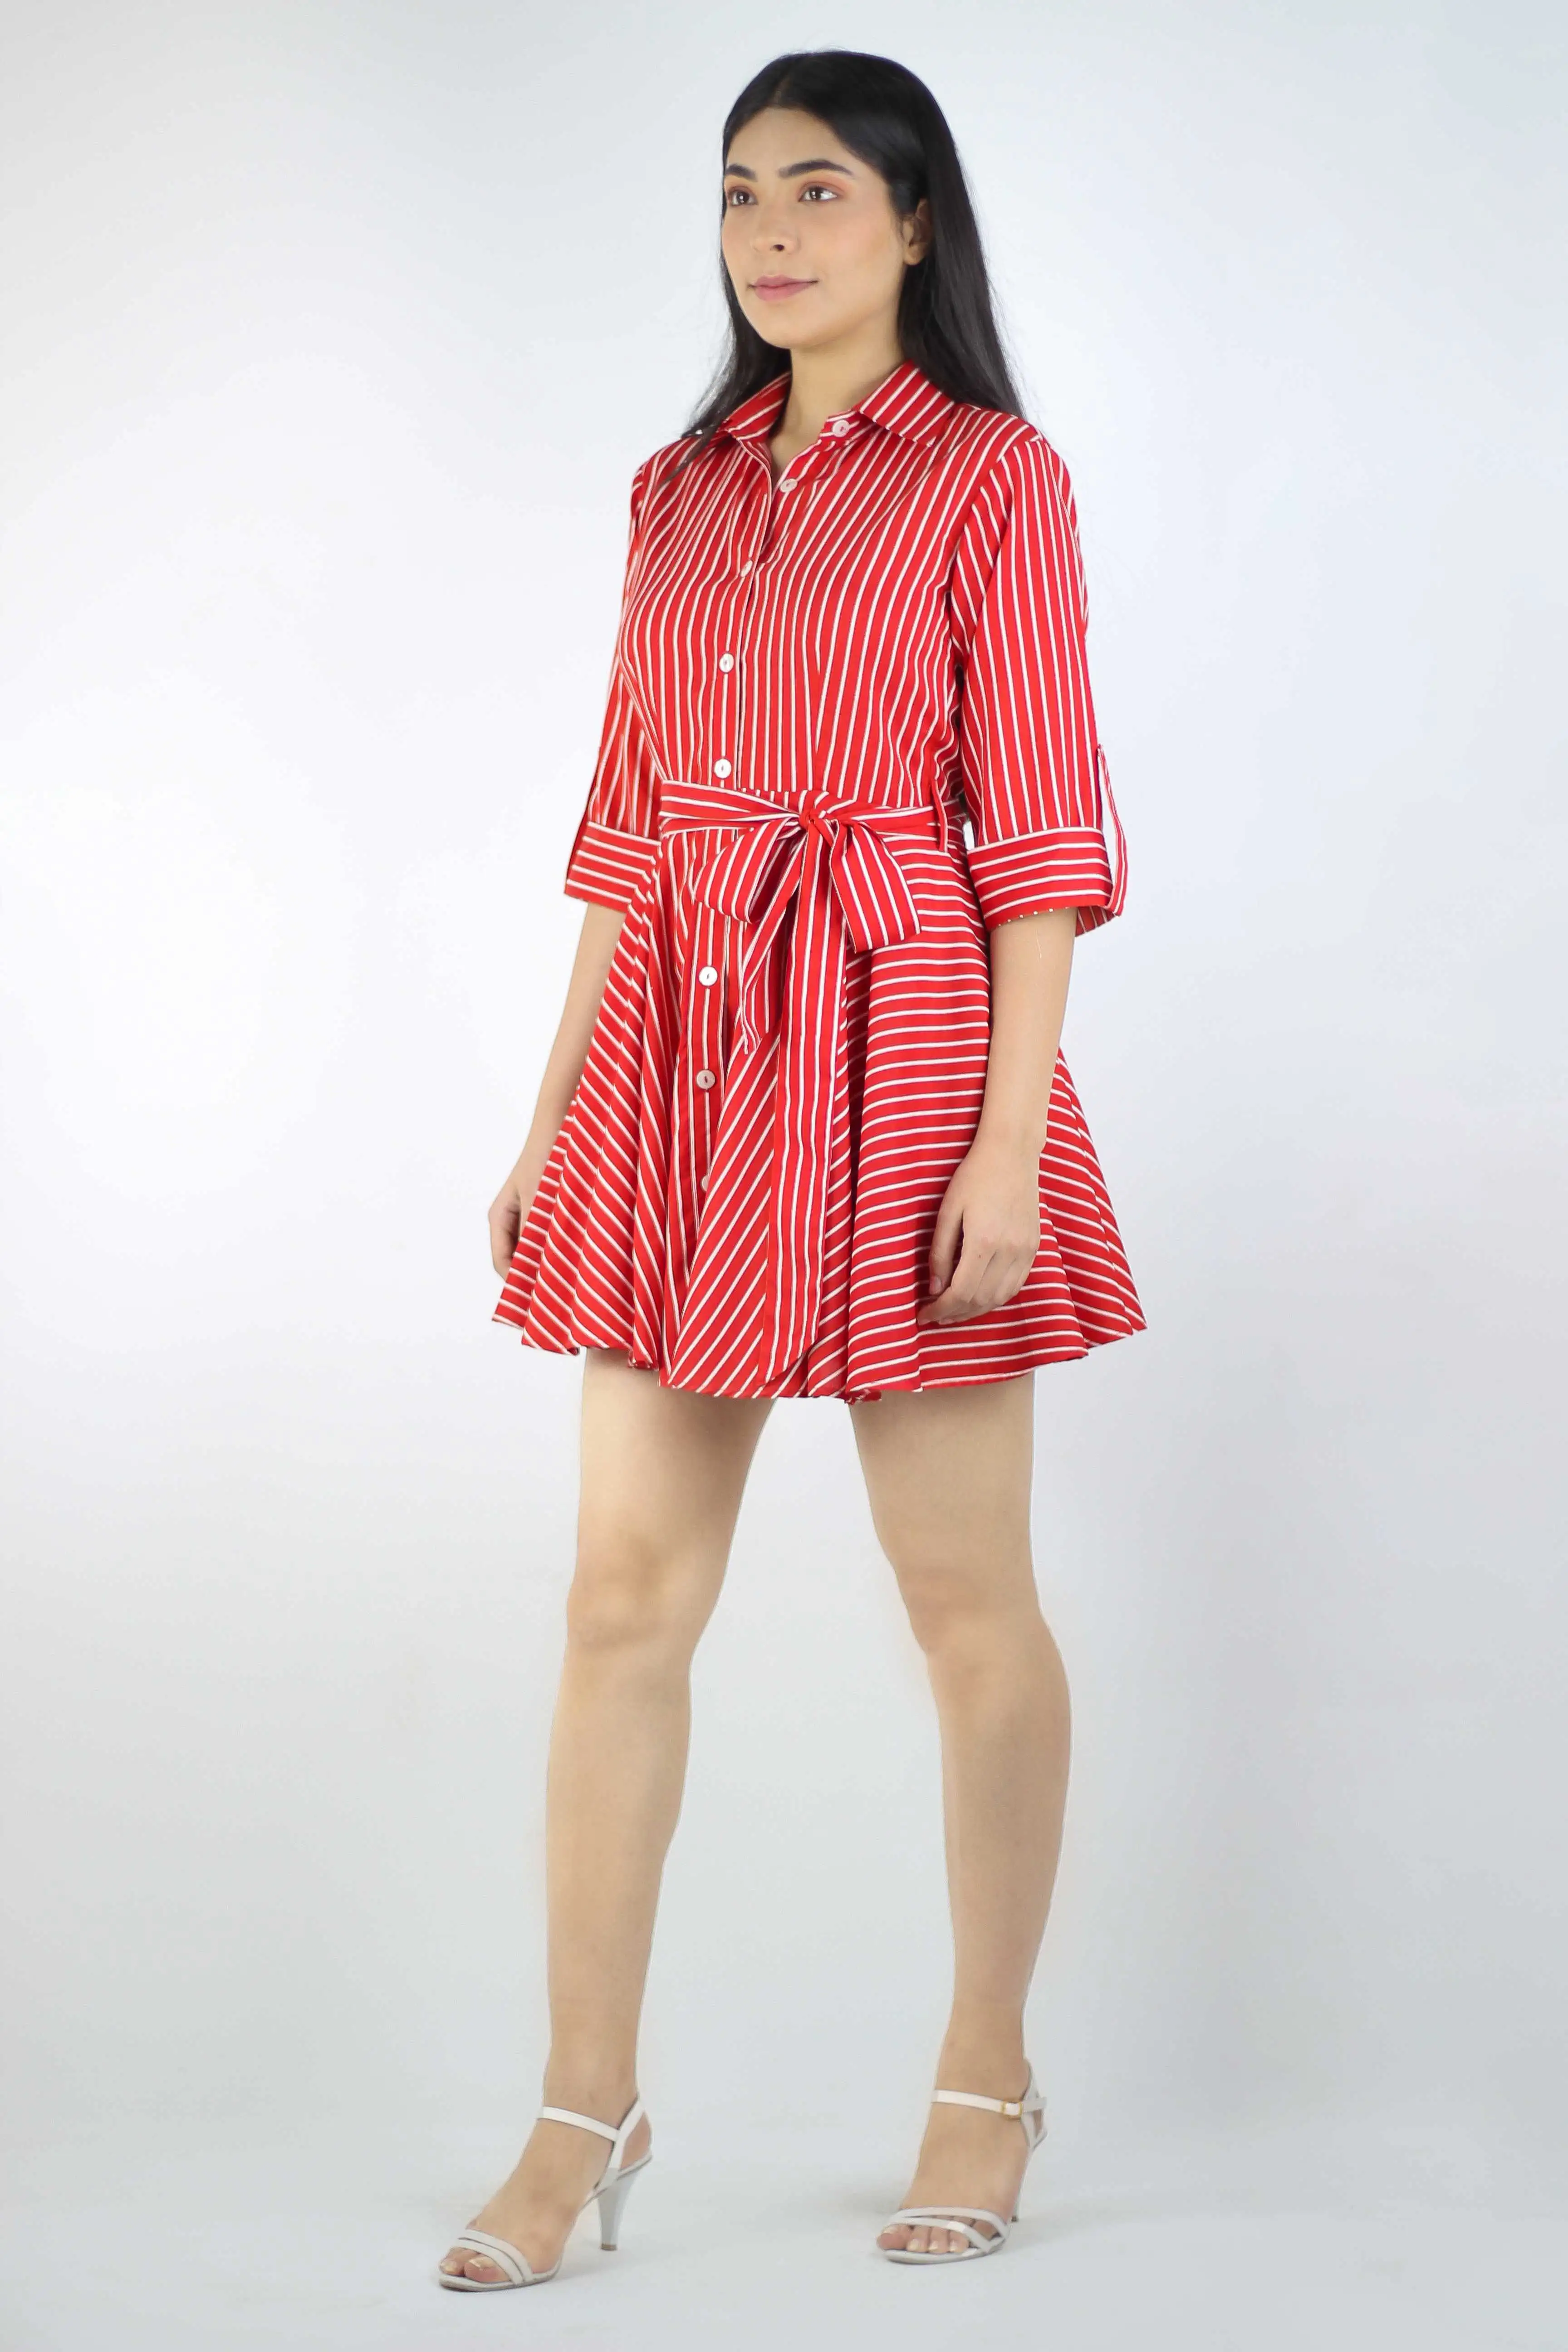 Red Stripped Shirt Short Dress